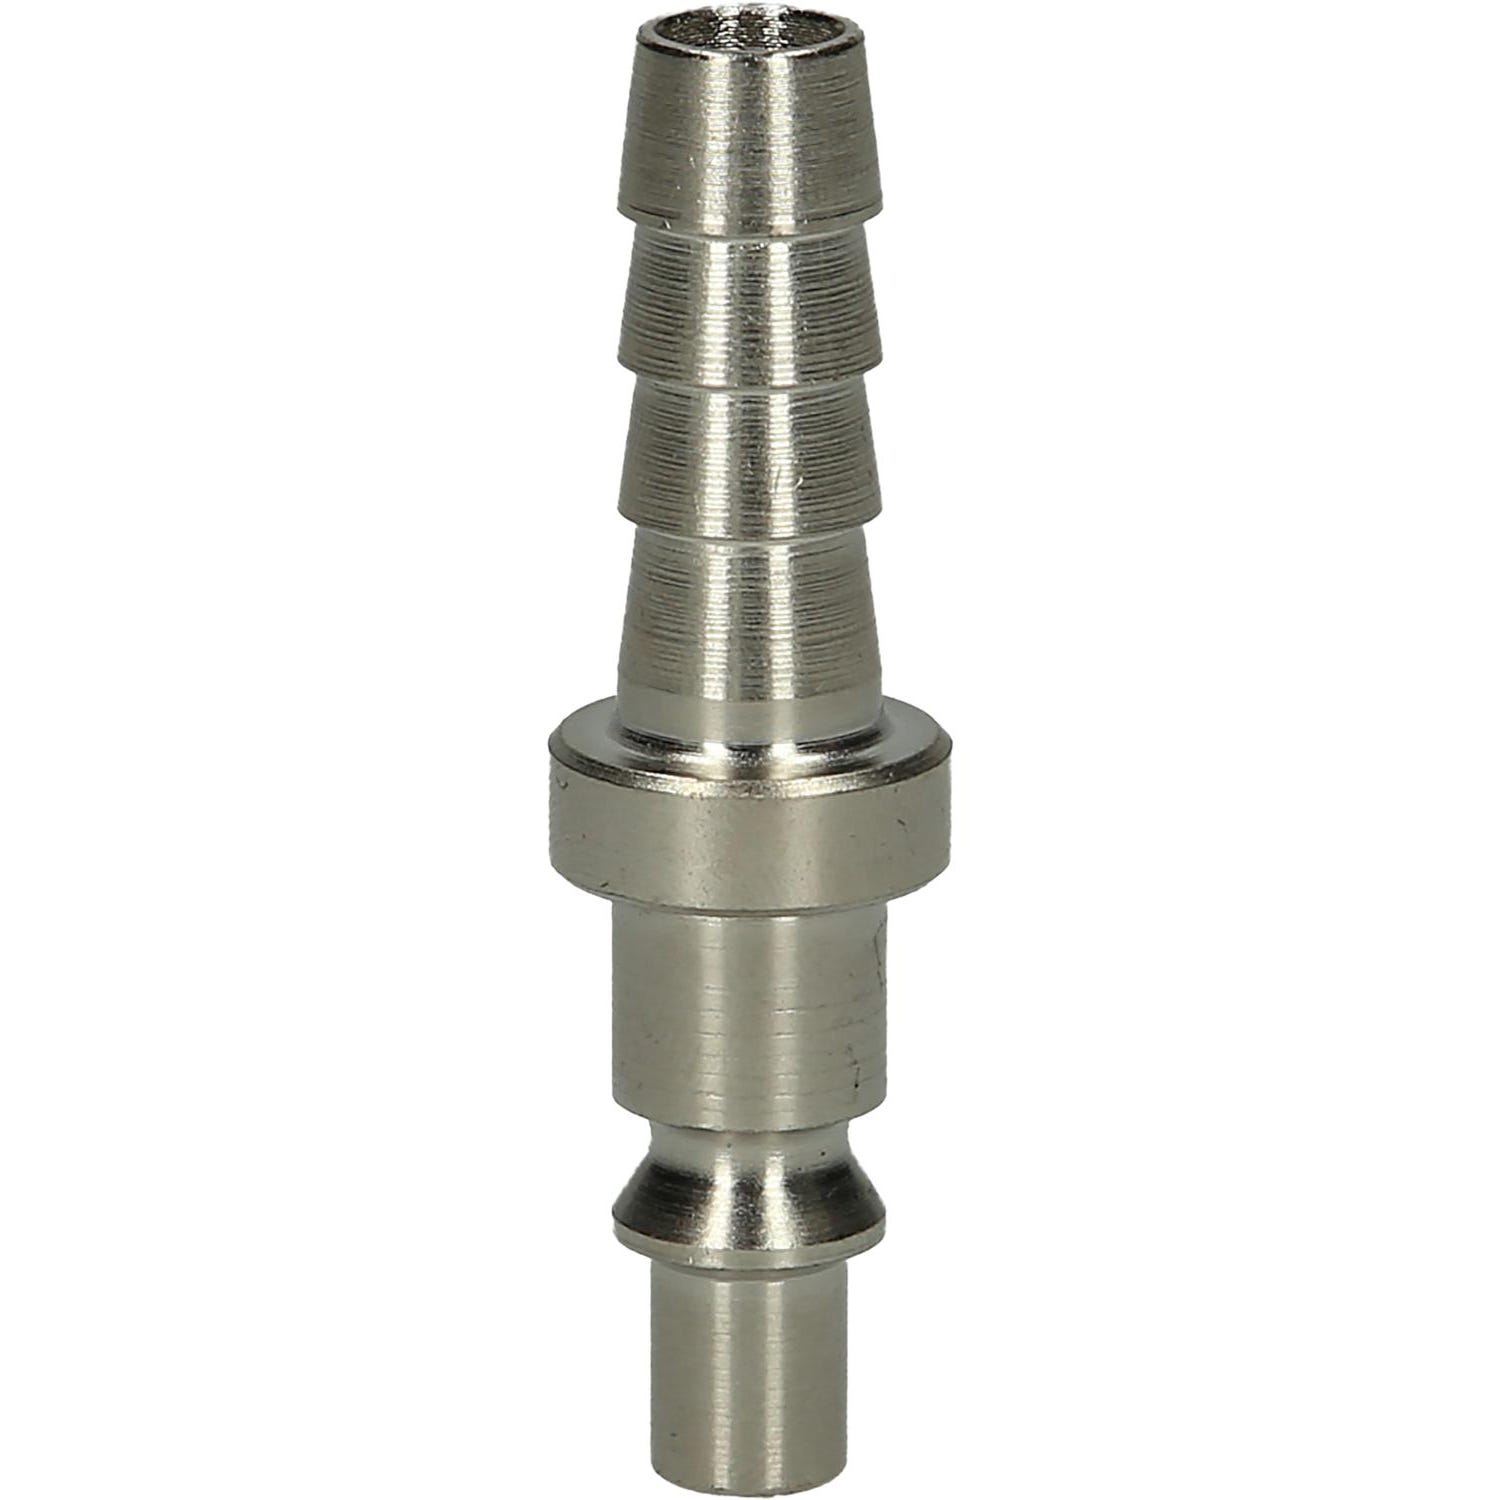 KS TOOLS Raccord pneumatique en métal avec embout de tuyau, Ø 10 mm, 0